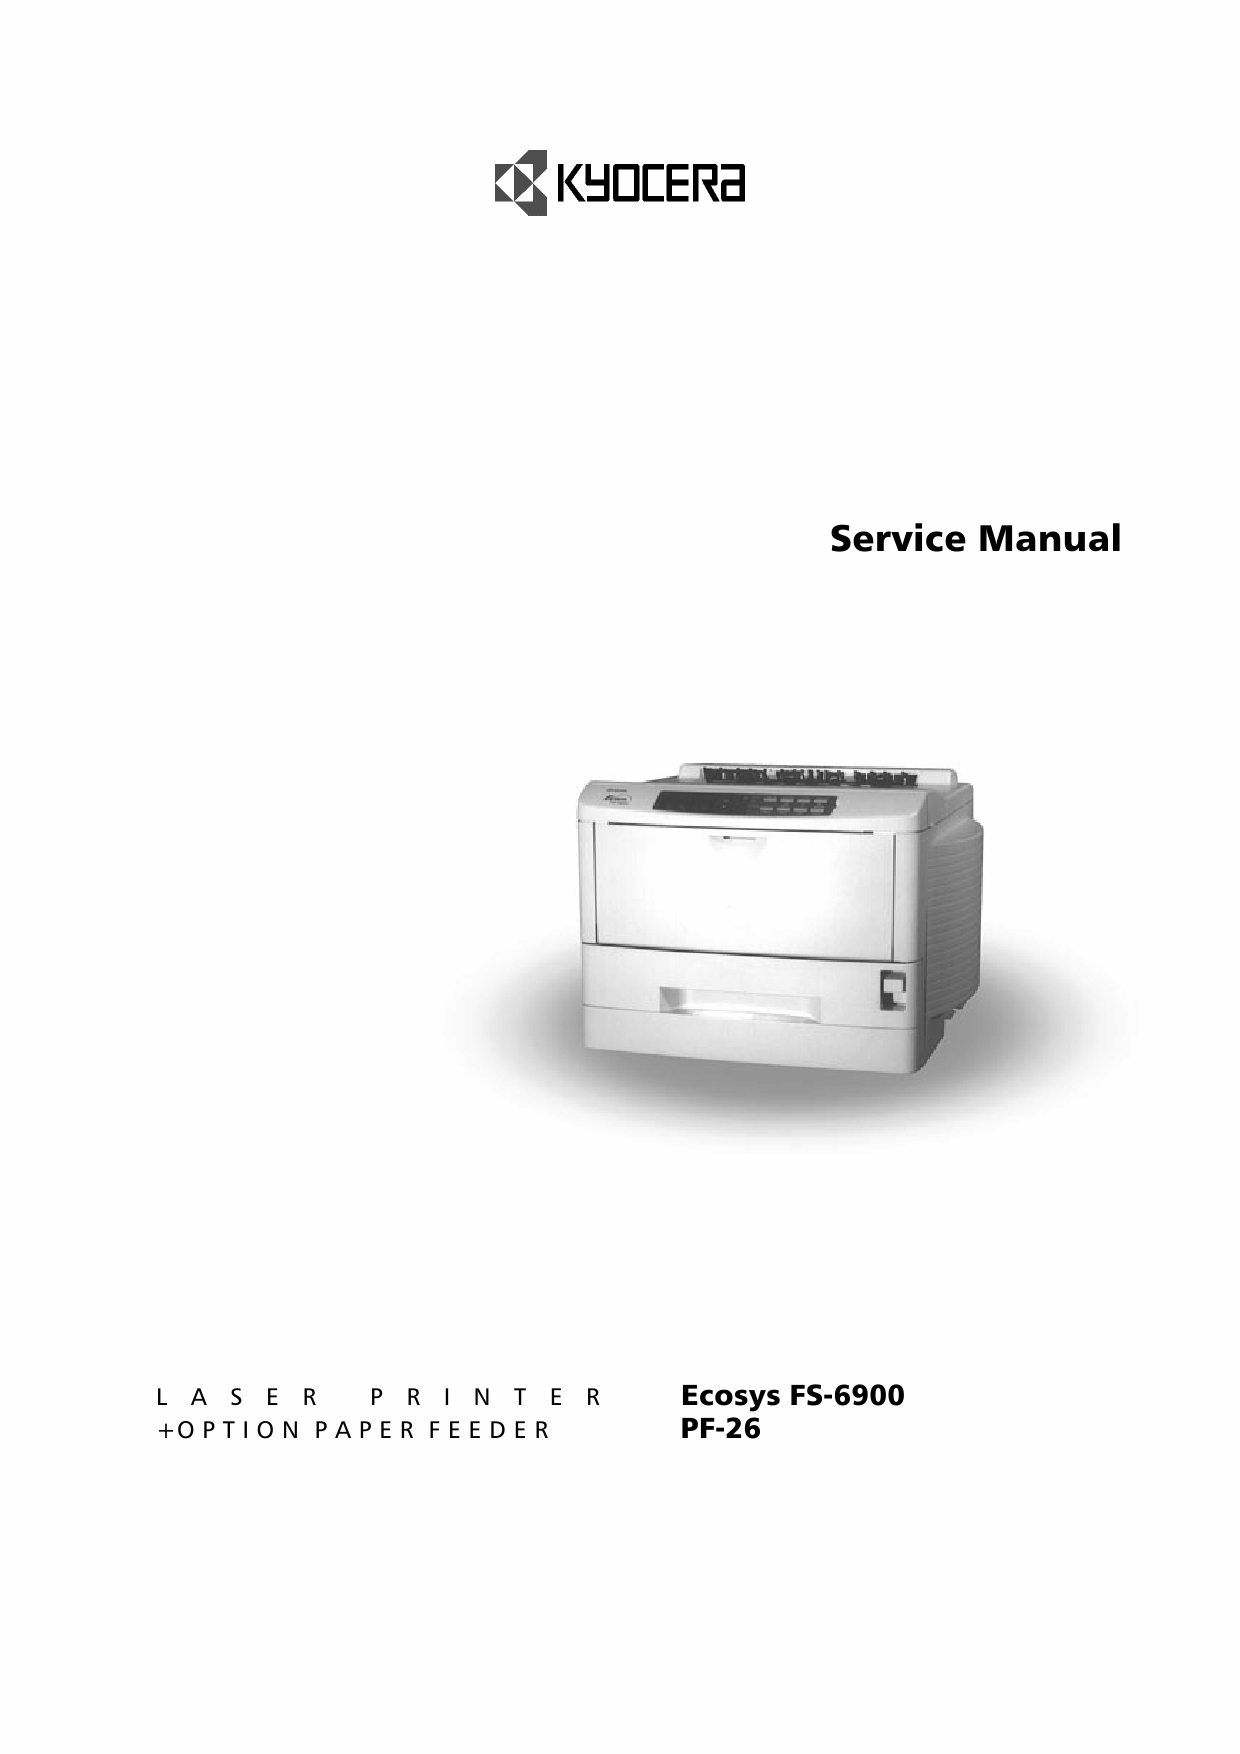 KYOCERA LaserPrinter FS-6900 Service Manual-1